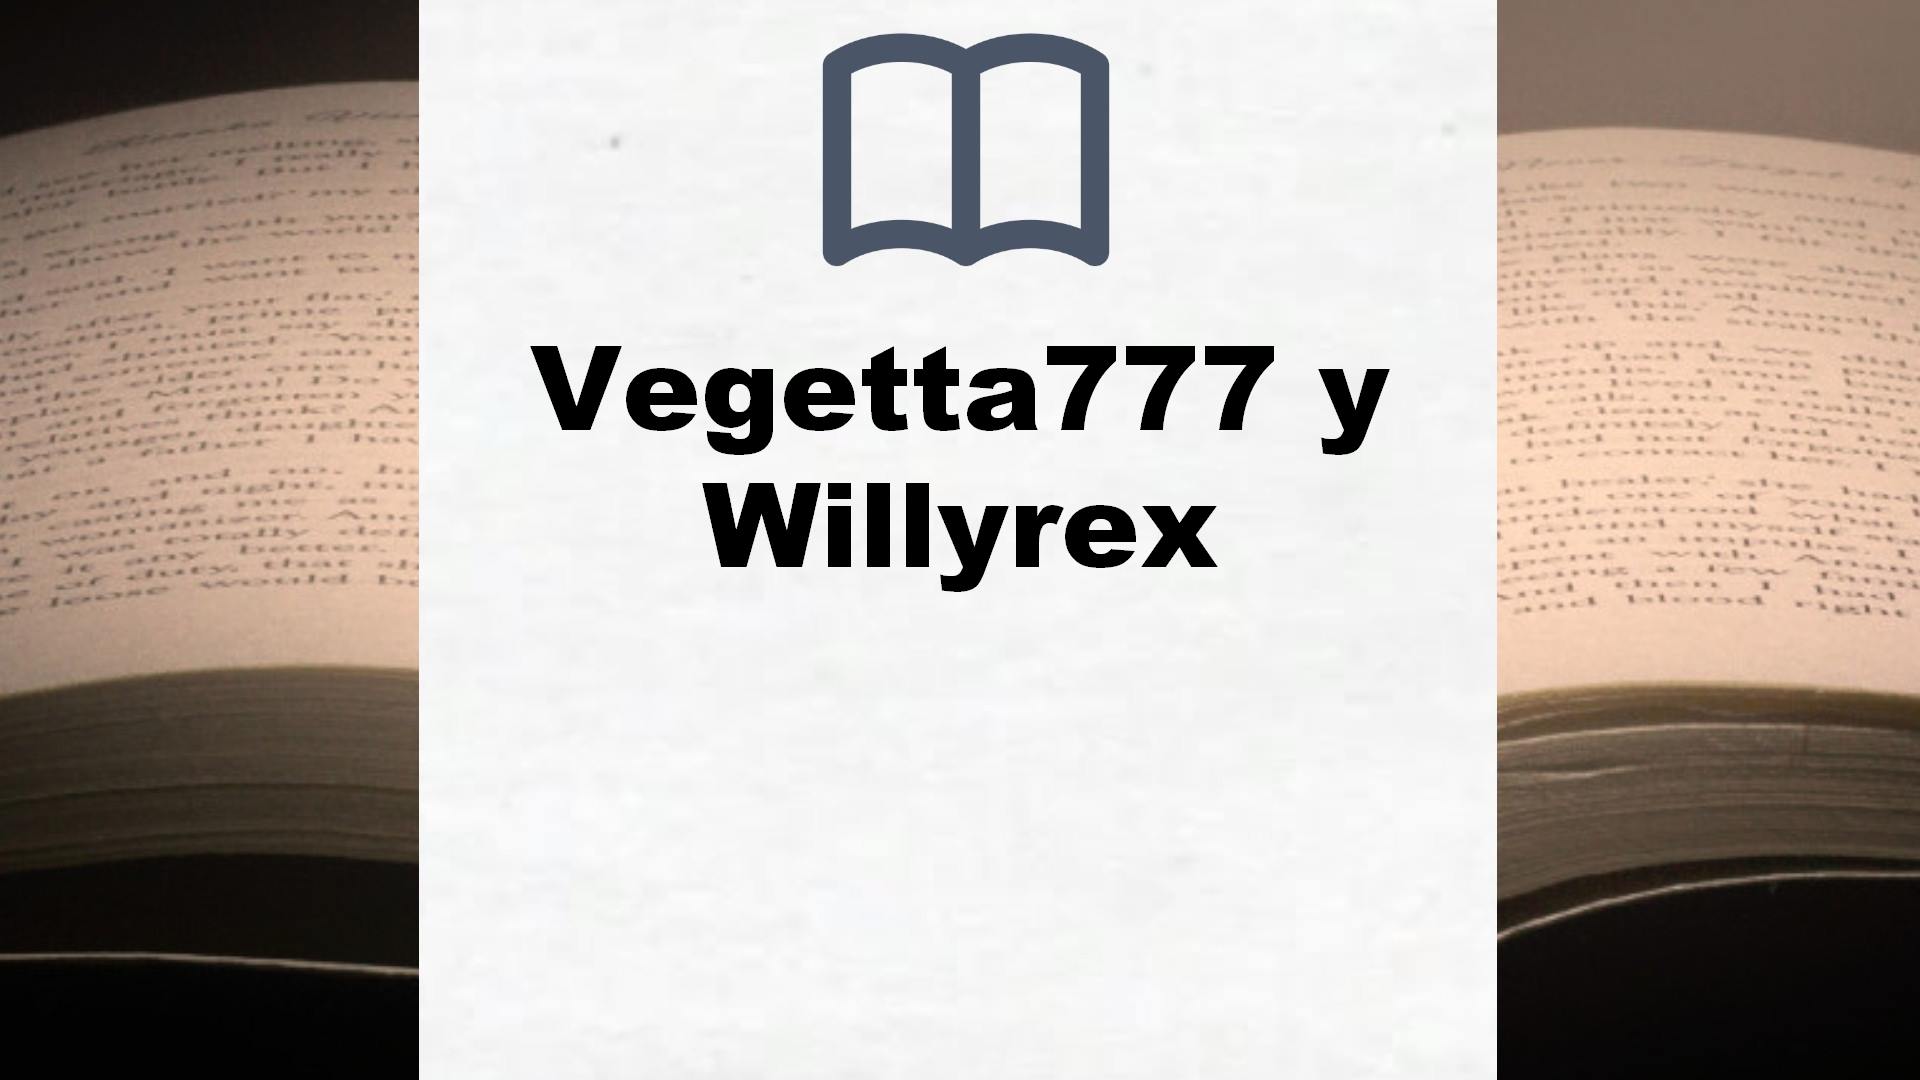 Libros Vegetta777 y Willyrex